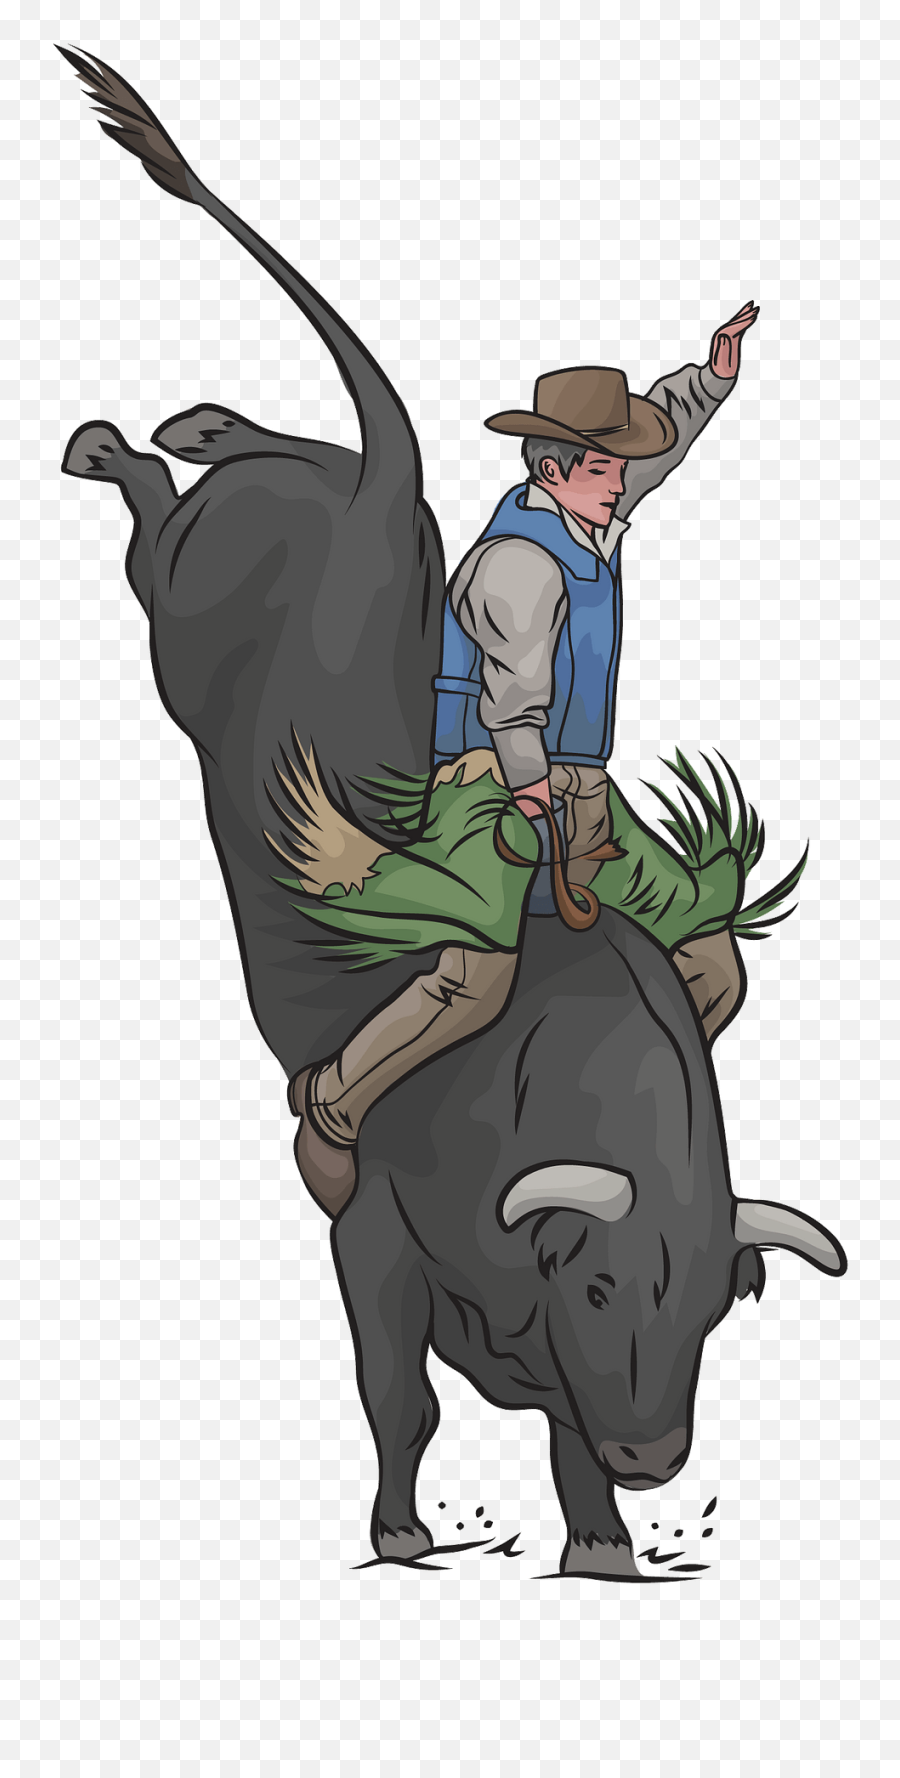 Bull Riding Rodeo Clipart - Dibujos De Montas De Toros Emoji,Rodeo Clipart